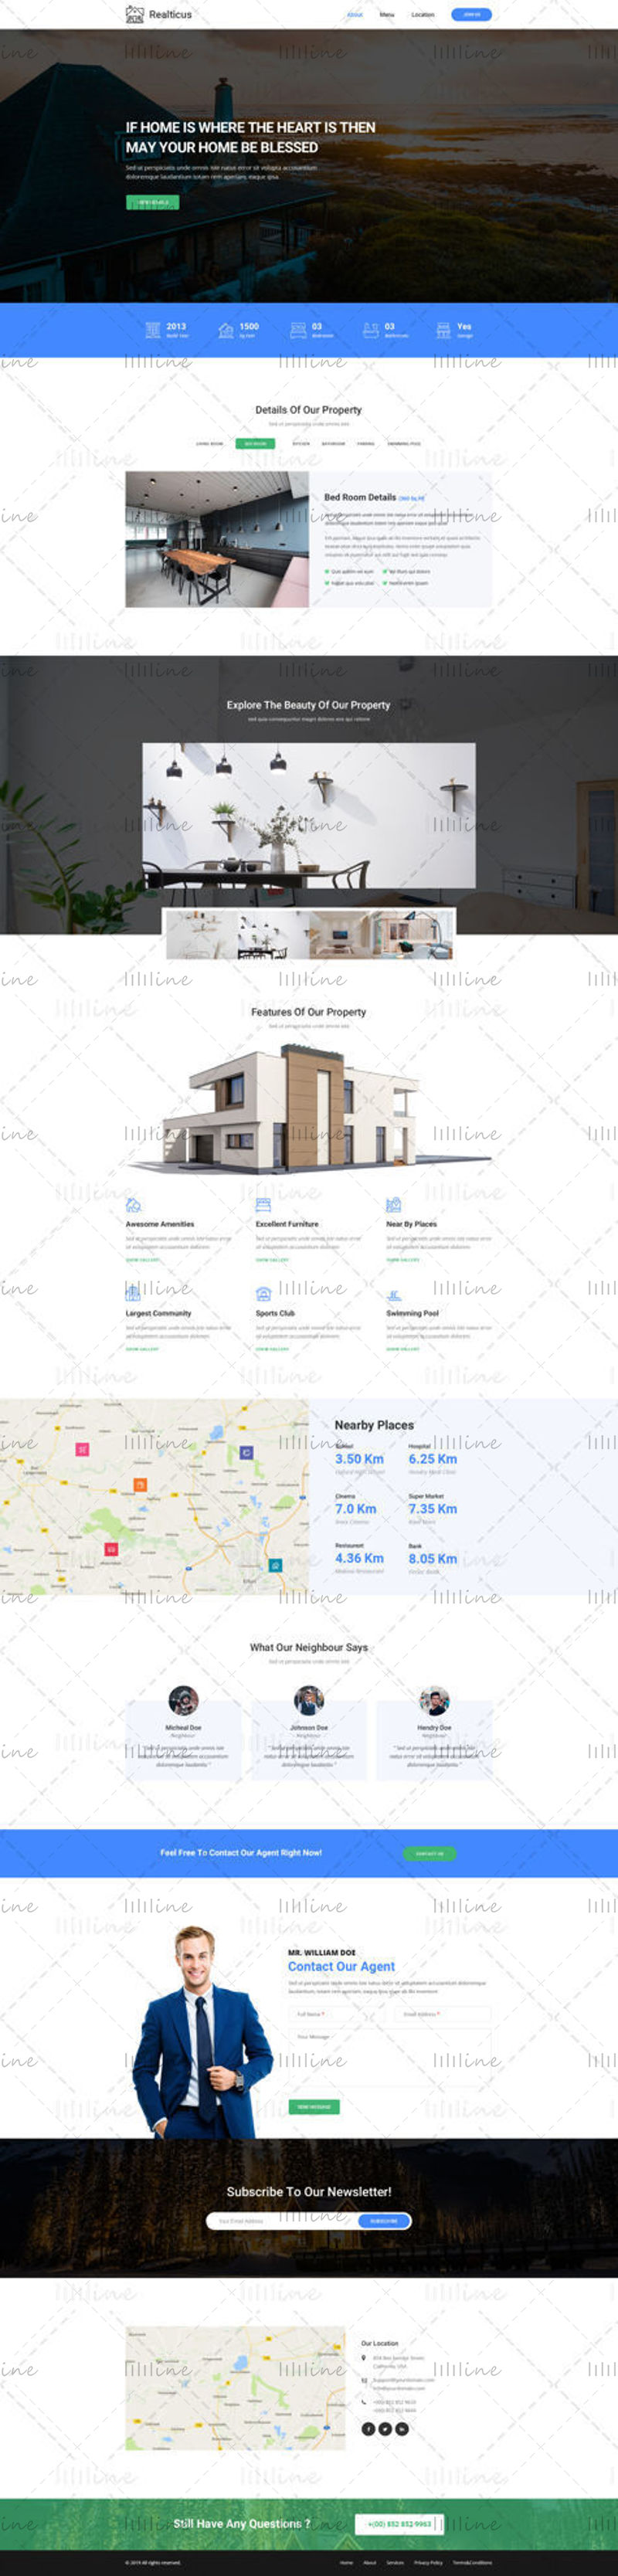 Real Estate website template UI